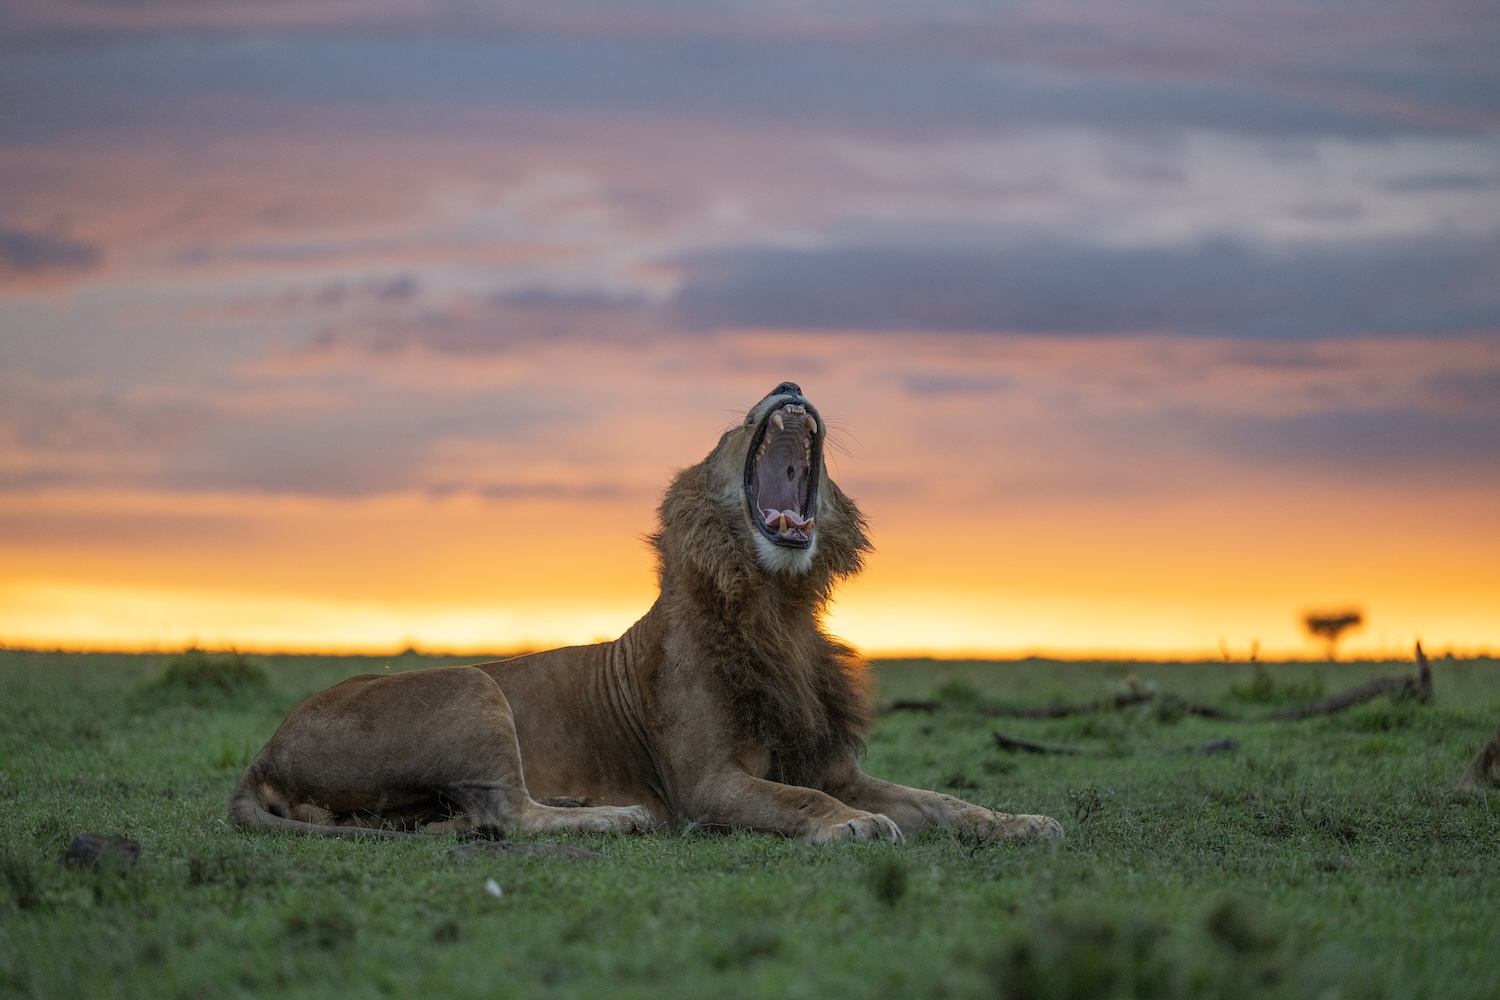 A lone lion yawns at sunset in the Masai Mara